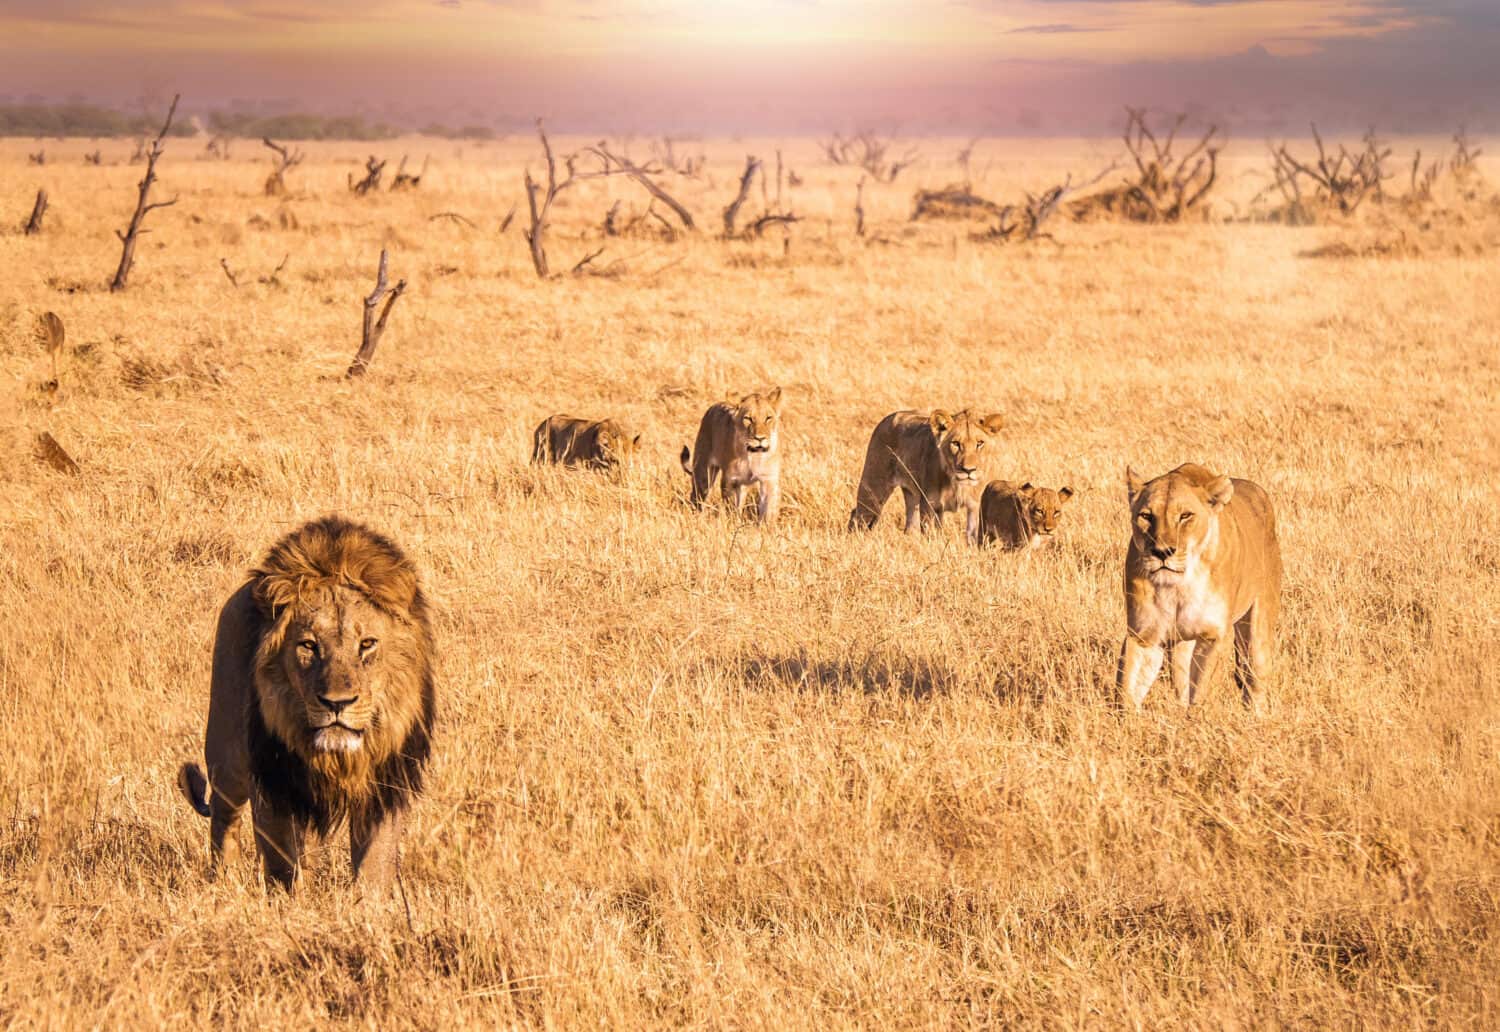 Scena di un safari africano in cui un leone maschio con una criniera folta guarda la telecamera e si muove attraverso l'erba lunga e secca con una leonessa e quattro cuccioli che sono il suo orgoglio.  Botswana.